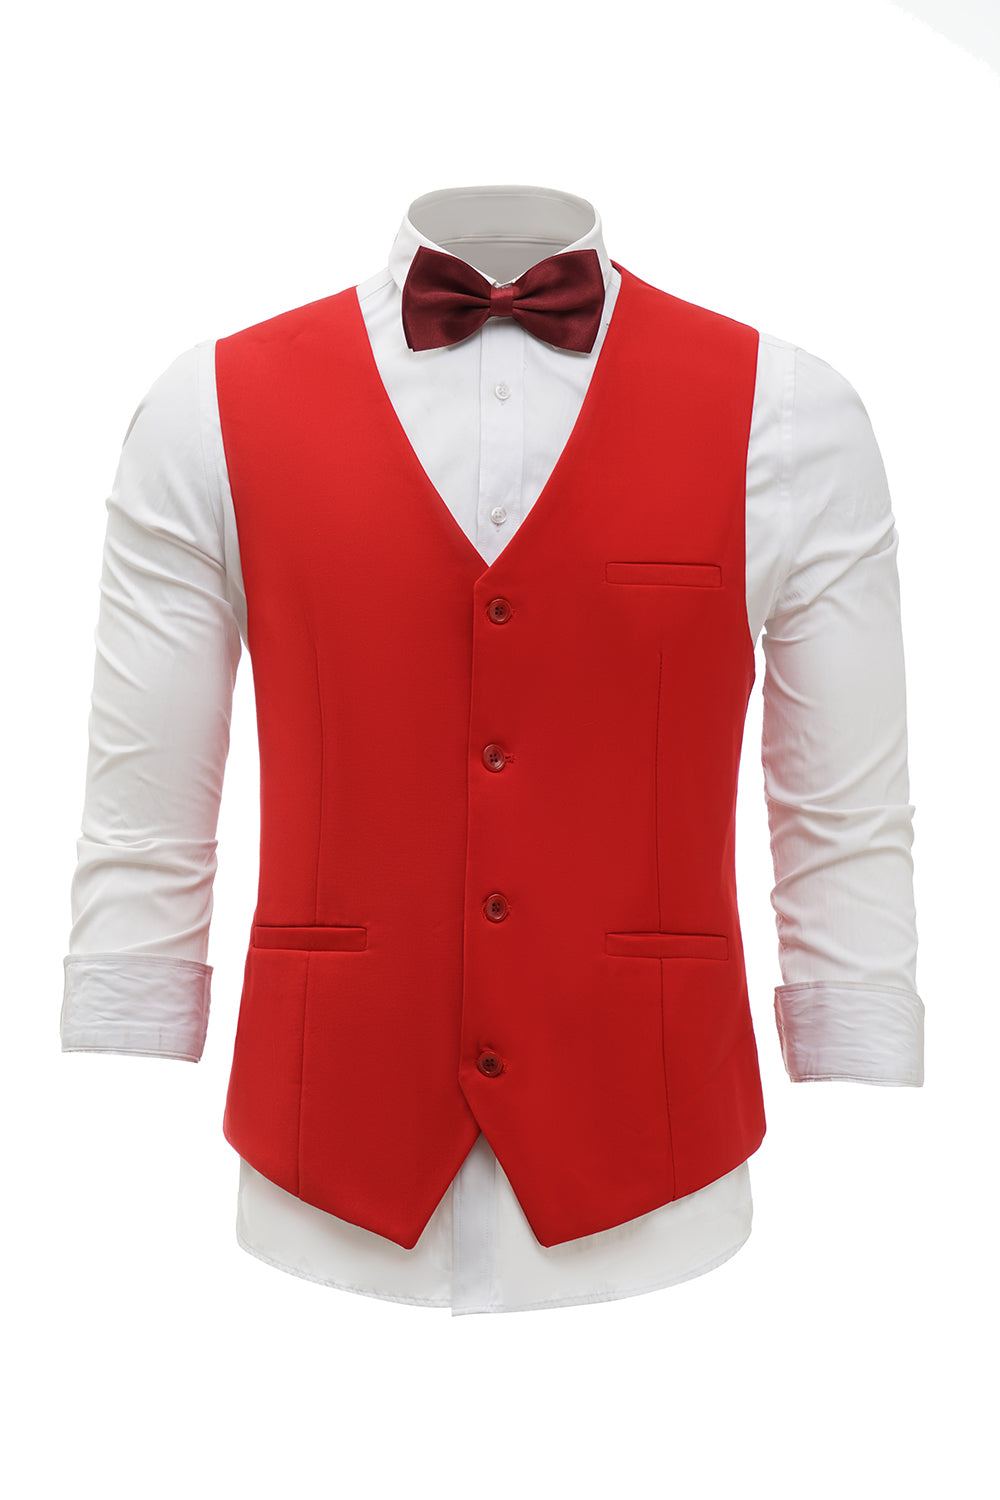 Colete de terno masculino peito único vermelho